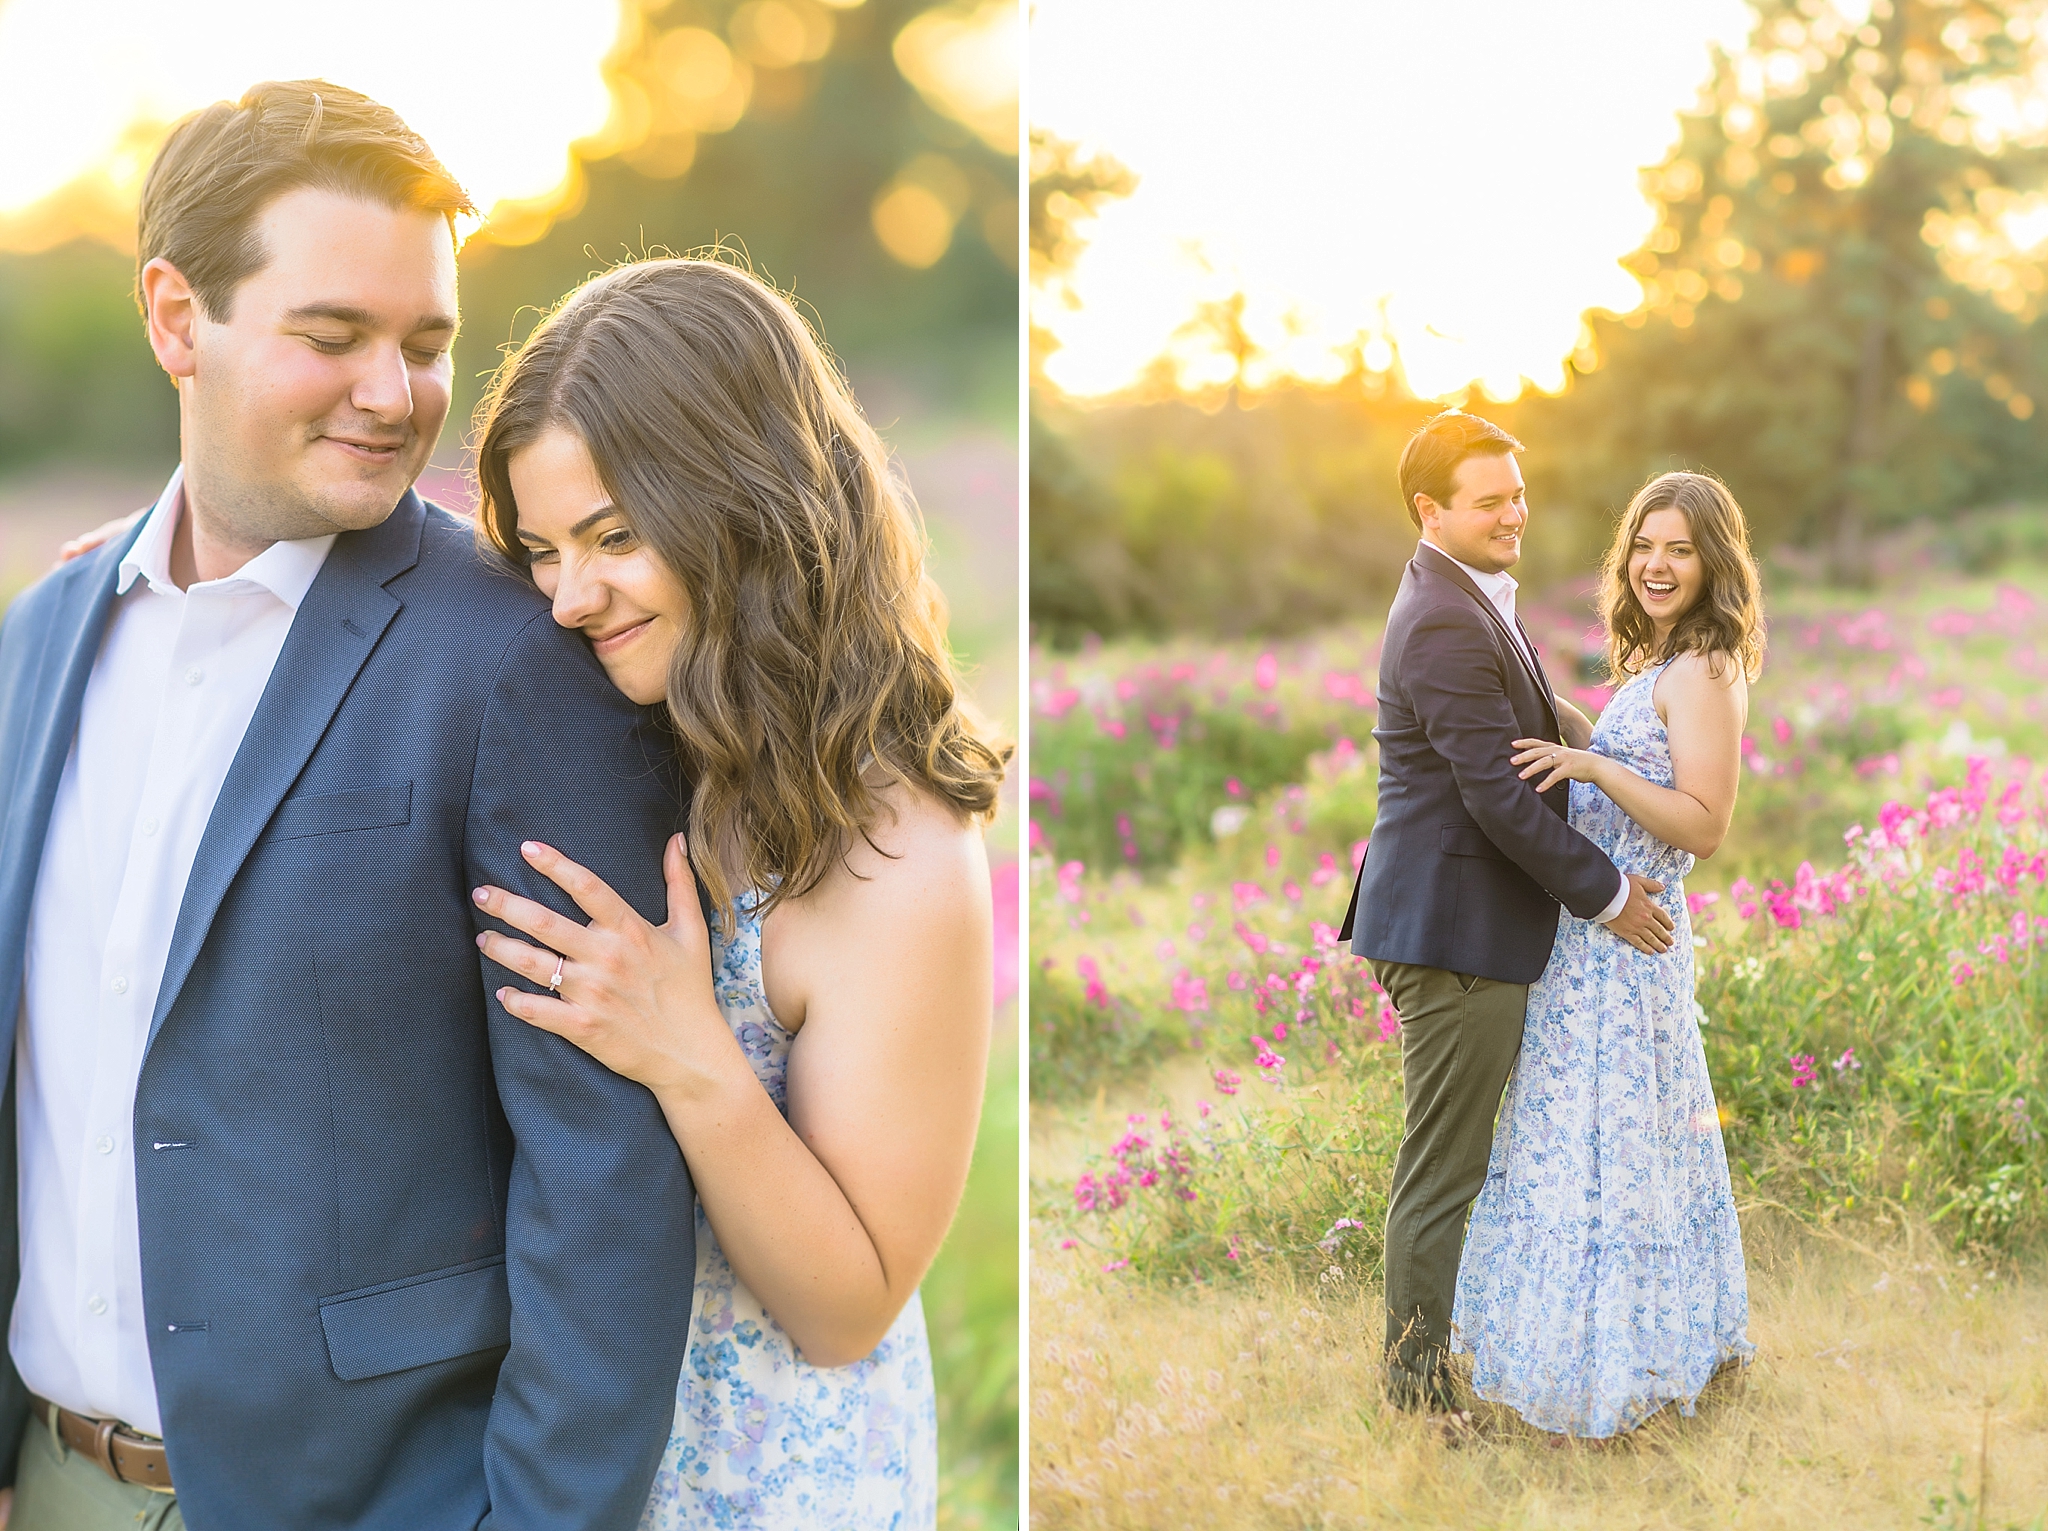 Brendan & Caroline | Seattle, Washington Engagement Photographer